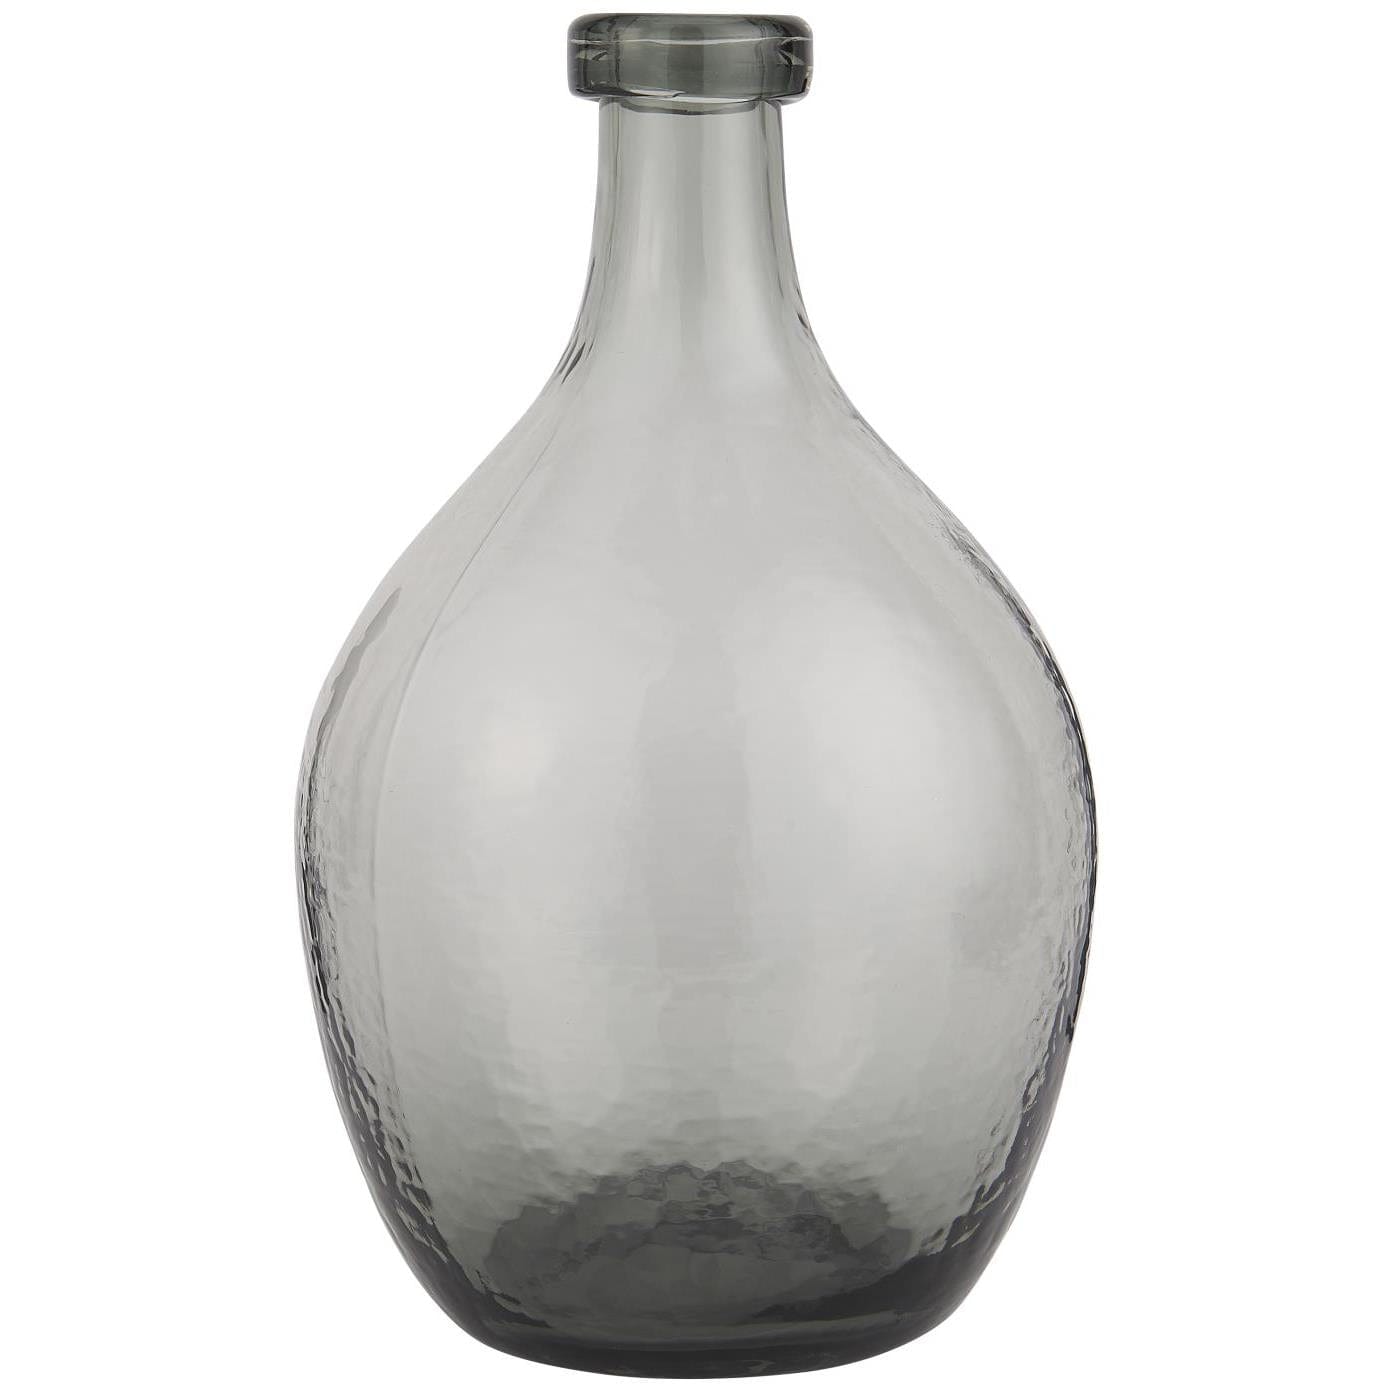 Klassisk munnblåst glassballong som kan stå alene og pryde hjemmet ditt eller dekorer med dine favoritt blomster. Kvister er også vakre i denne vasen fra Ib Laursen.